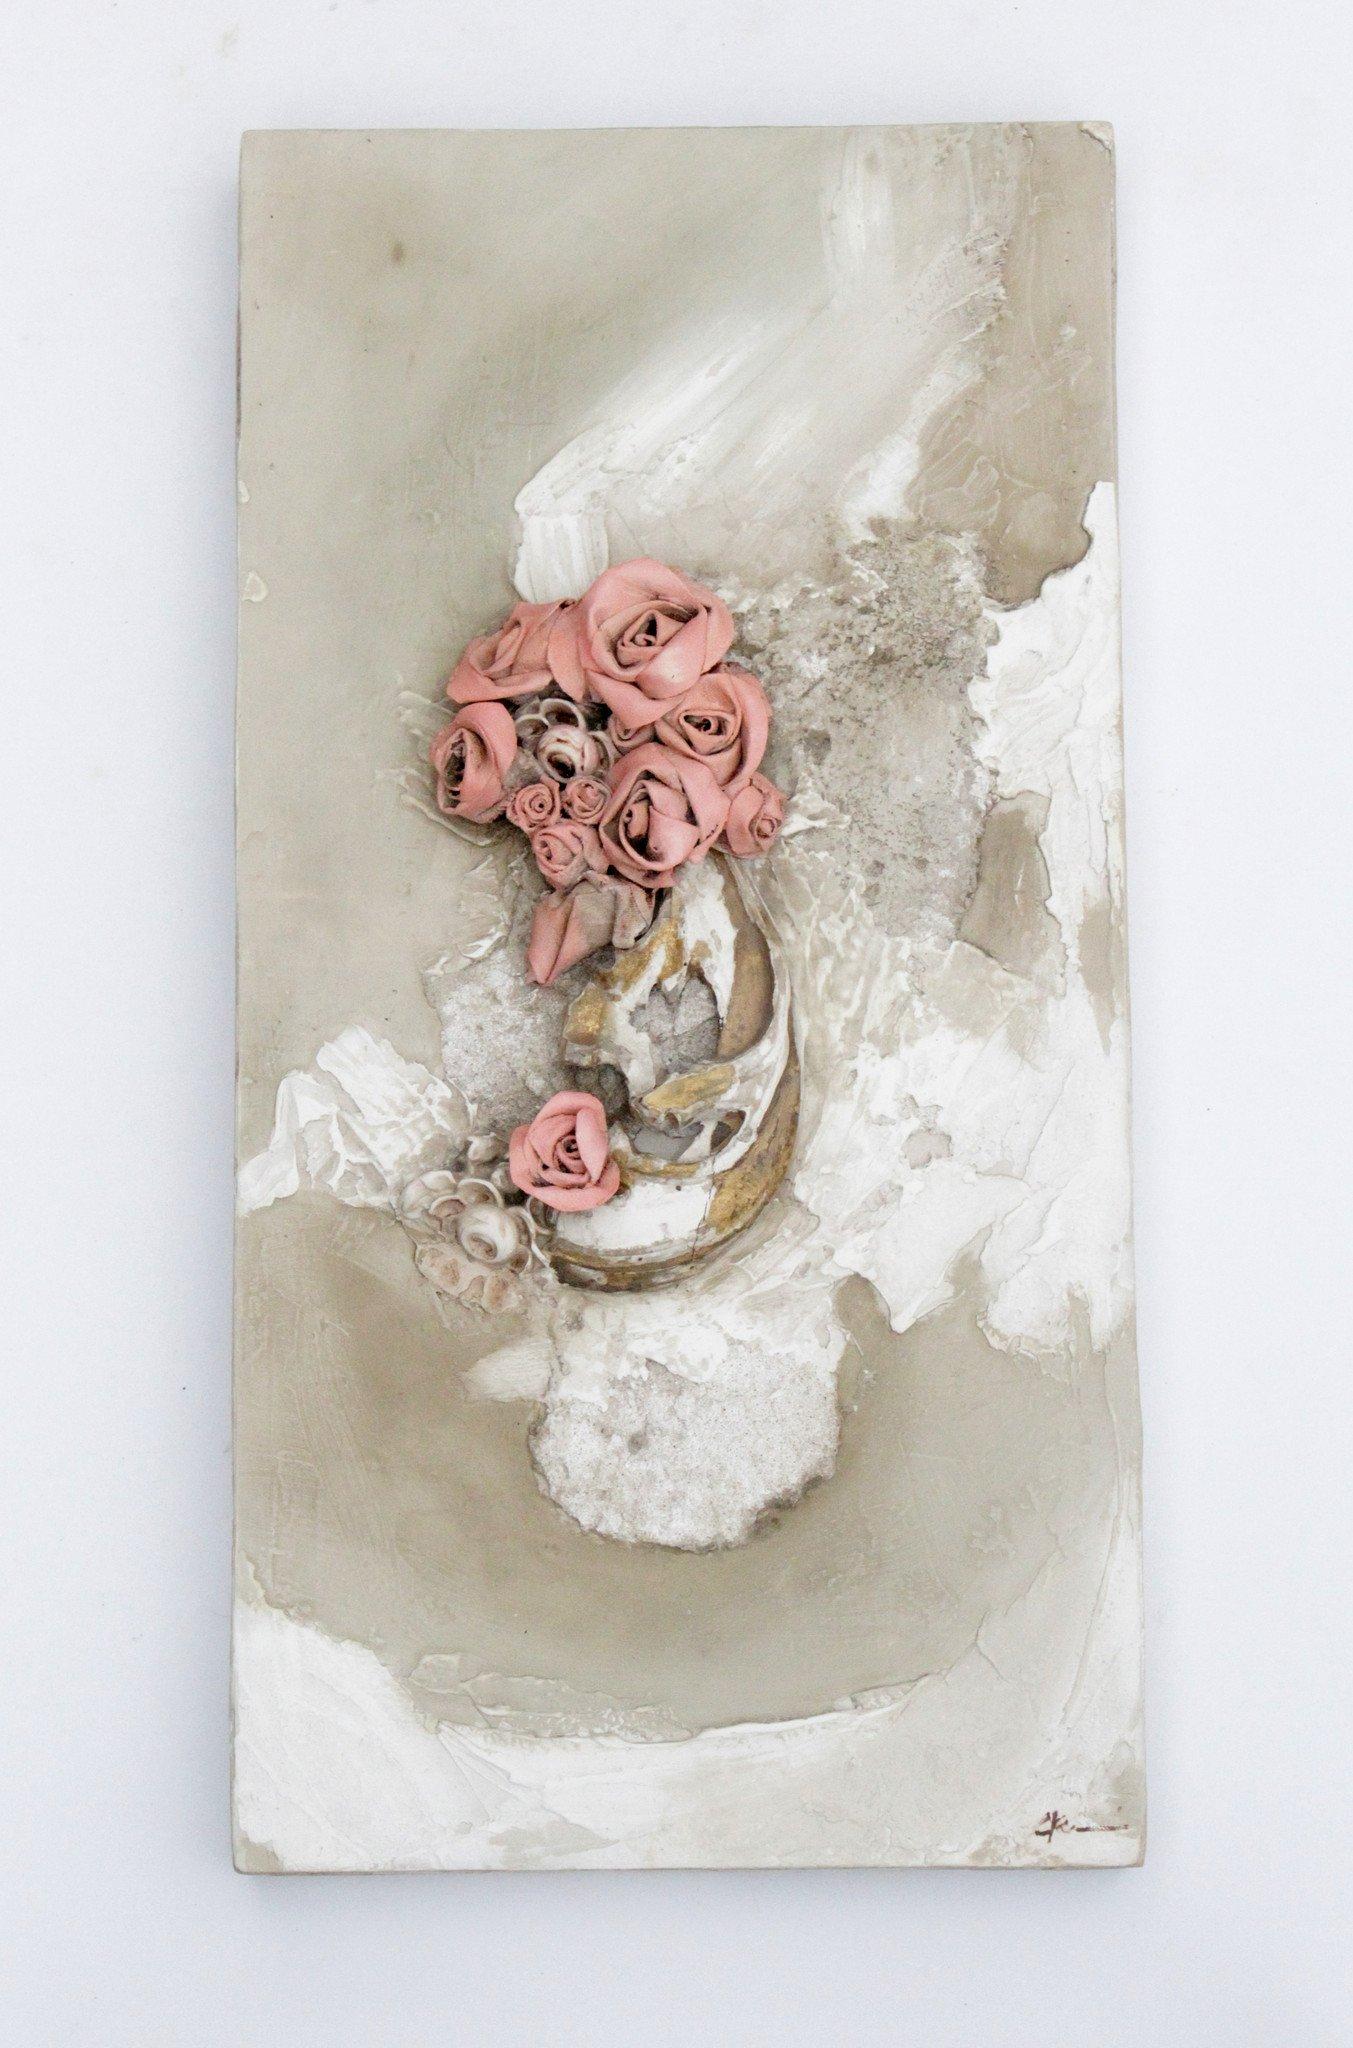 Paire de fragments italiens du XVIIIe siècle décorés de fleurs en toile de lin sculptée, de coraux en agate fossile et de roses en plâtre vénitien.
 
L'une des pièces est entièrement en plâtre, tandis que l'autre est une combinaison de plâtre pour